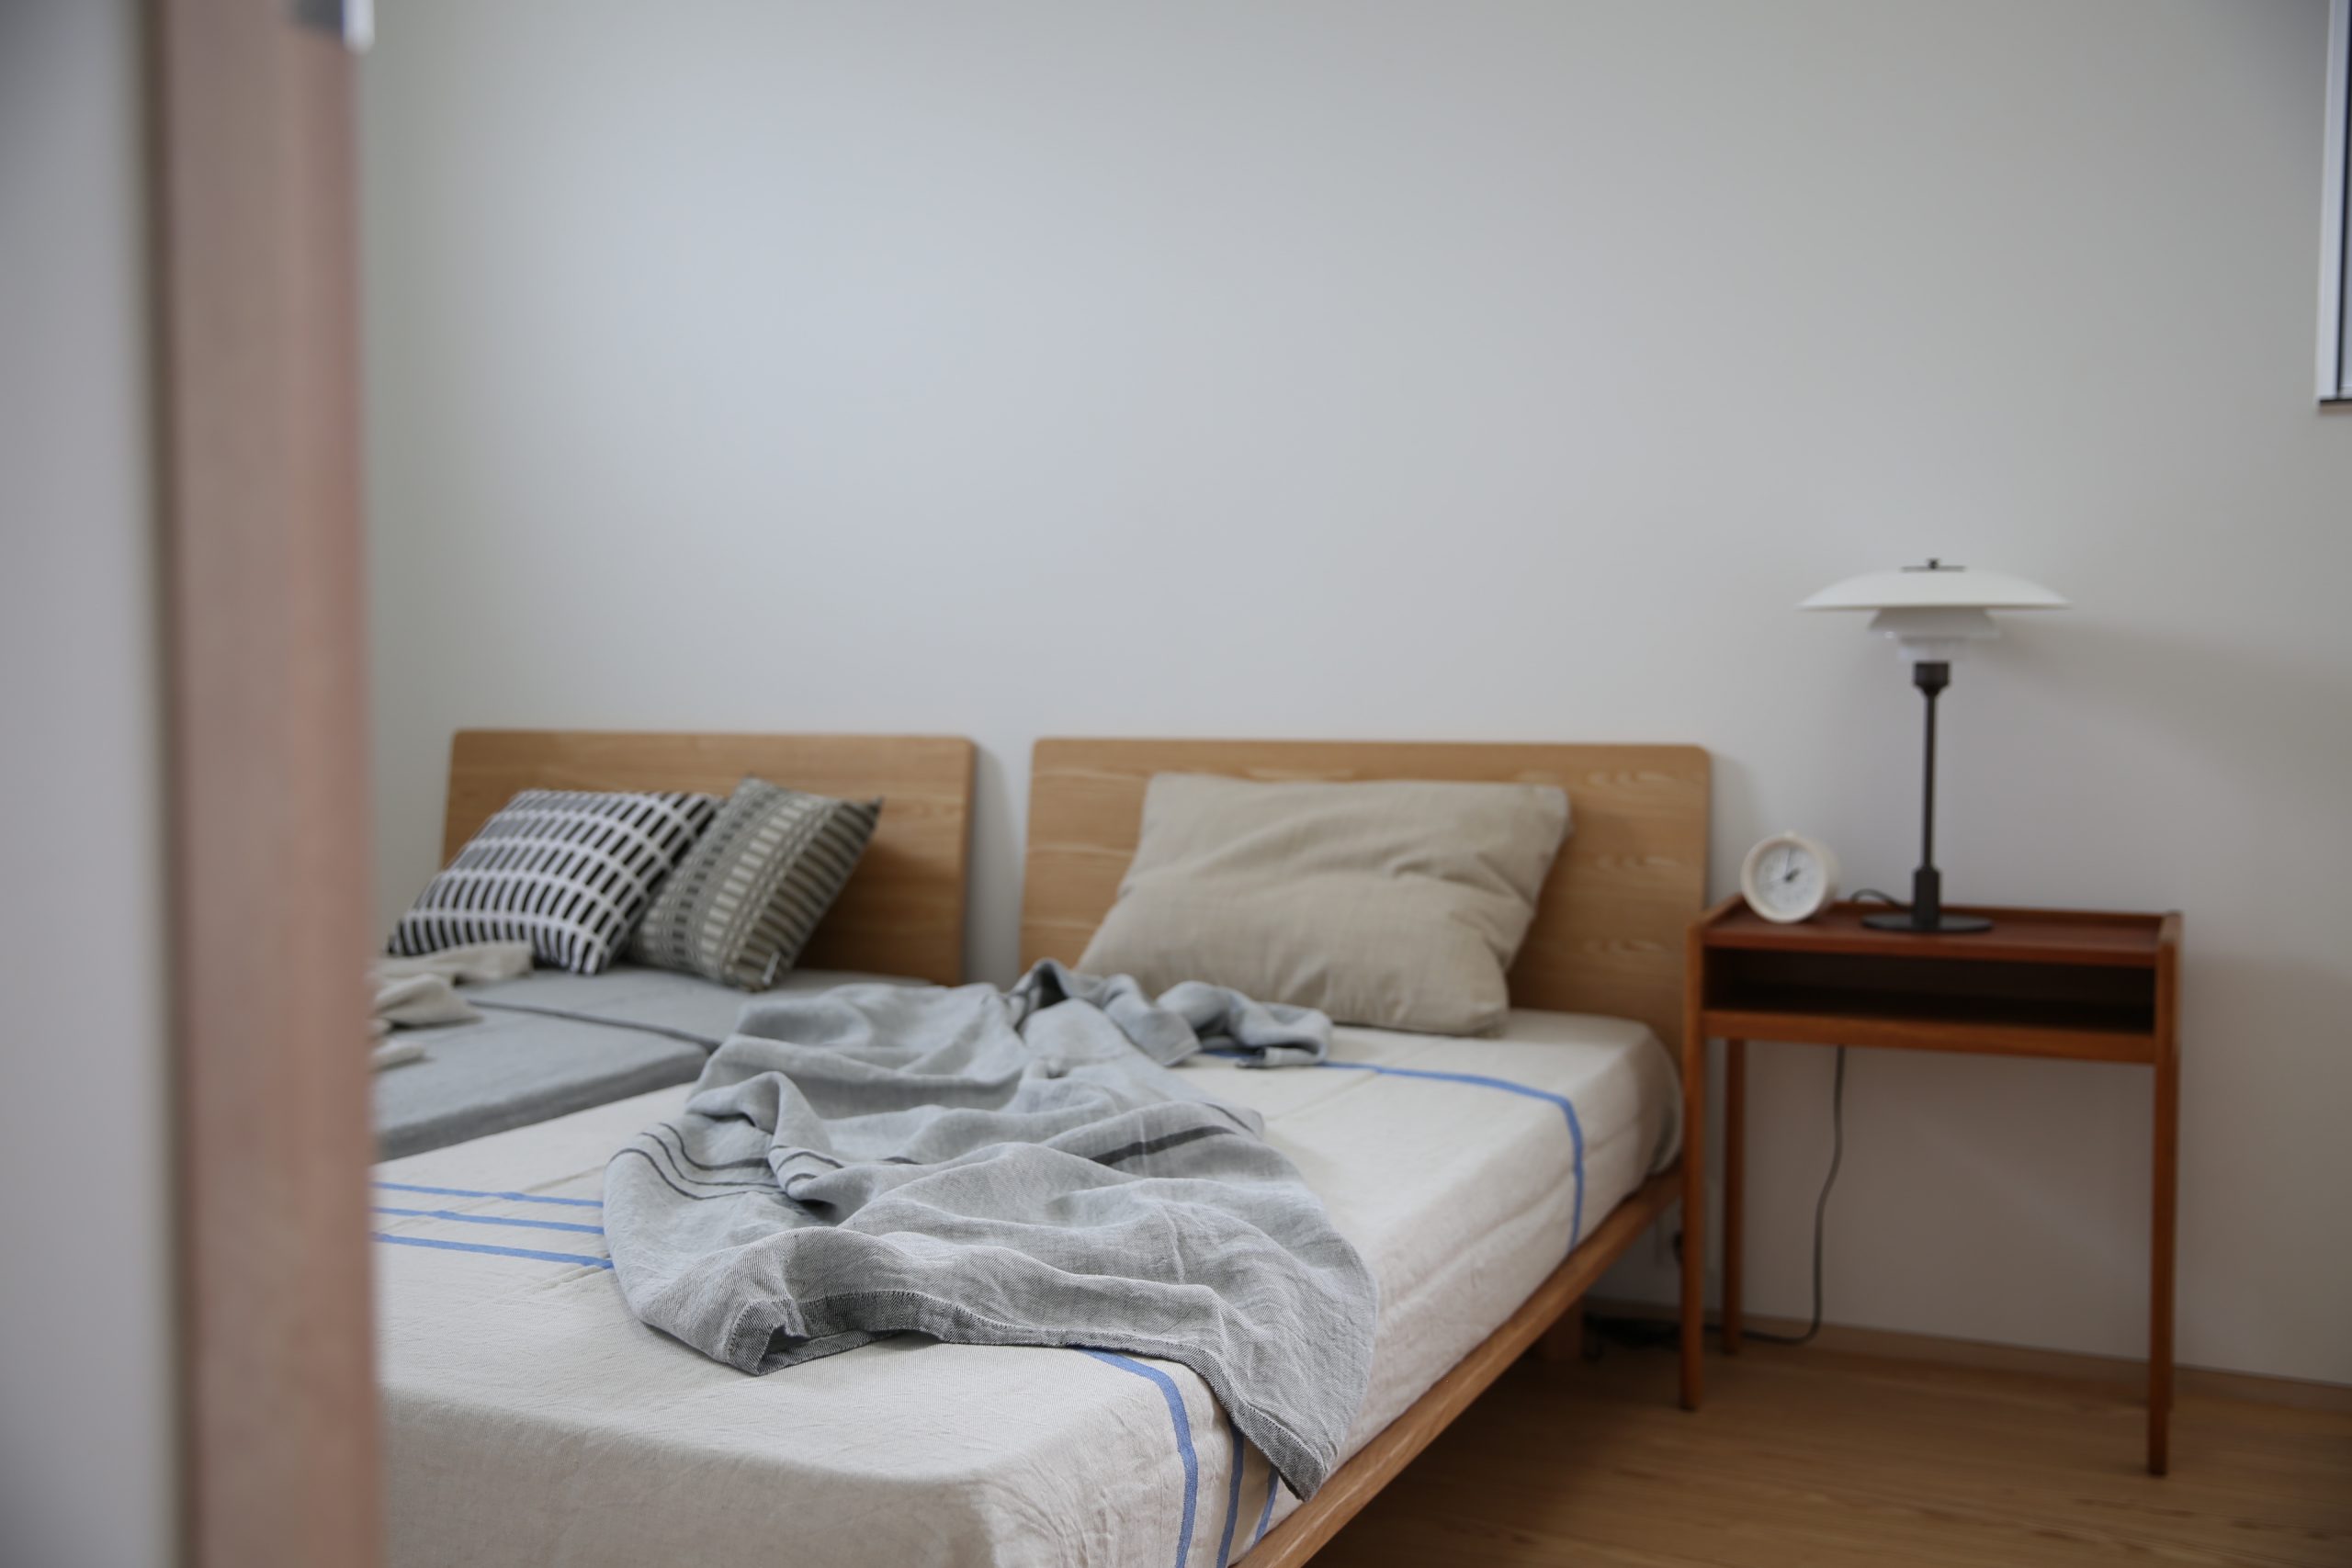 ラプアンカンクリのリネン寝具は肌にやさしくひんやり快適。夏の寝苦し 